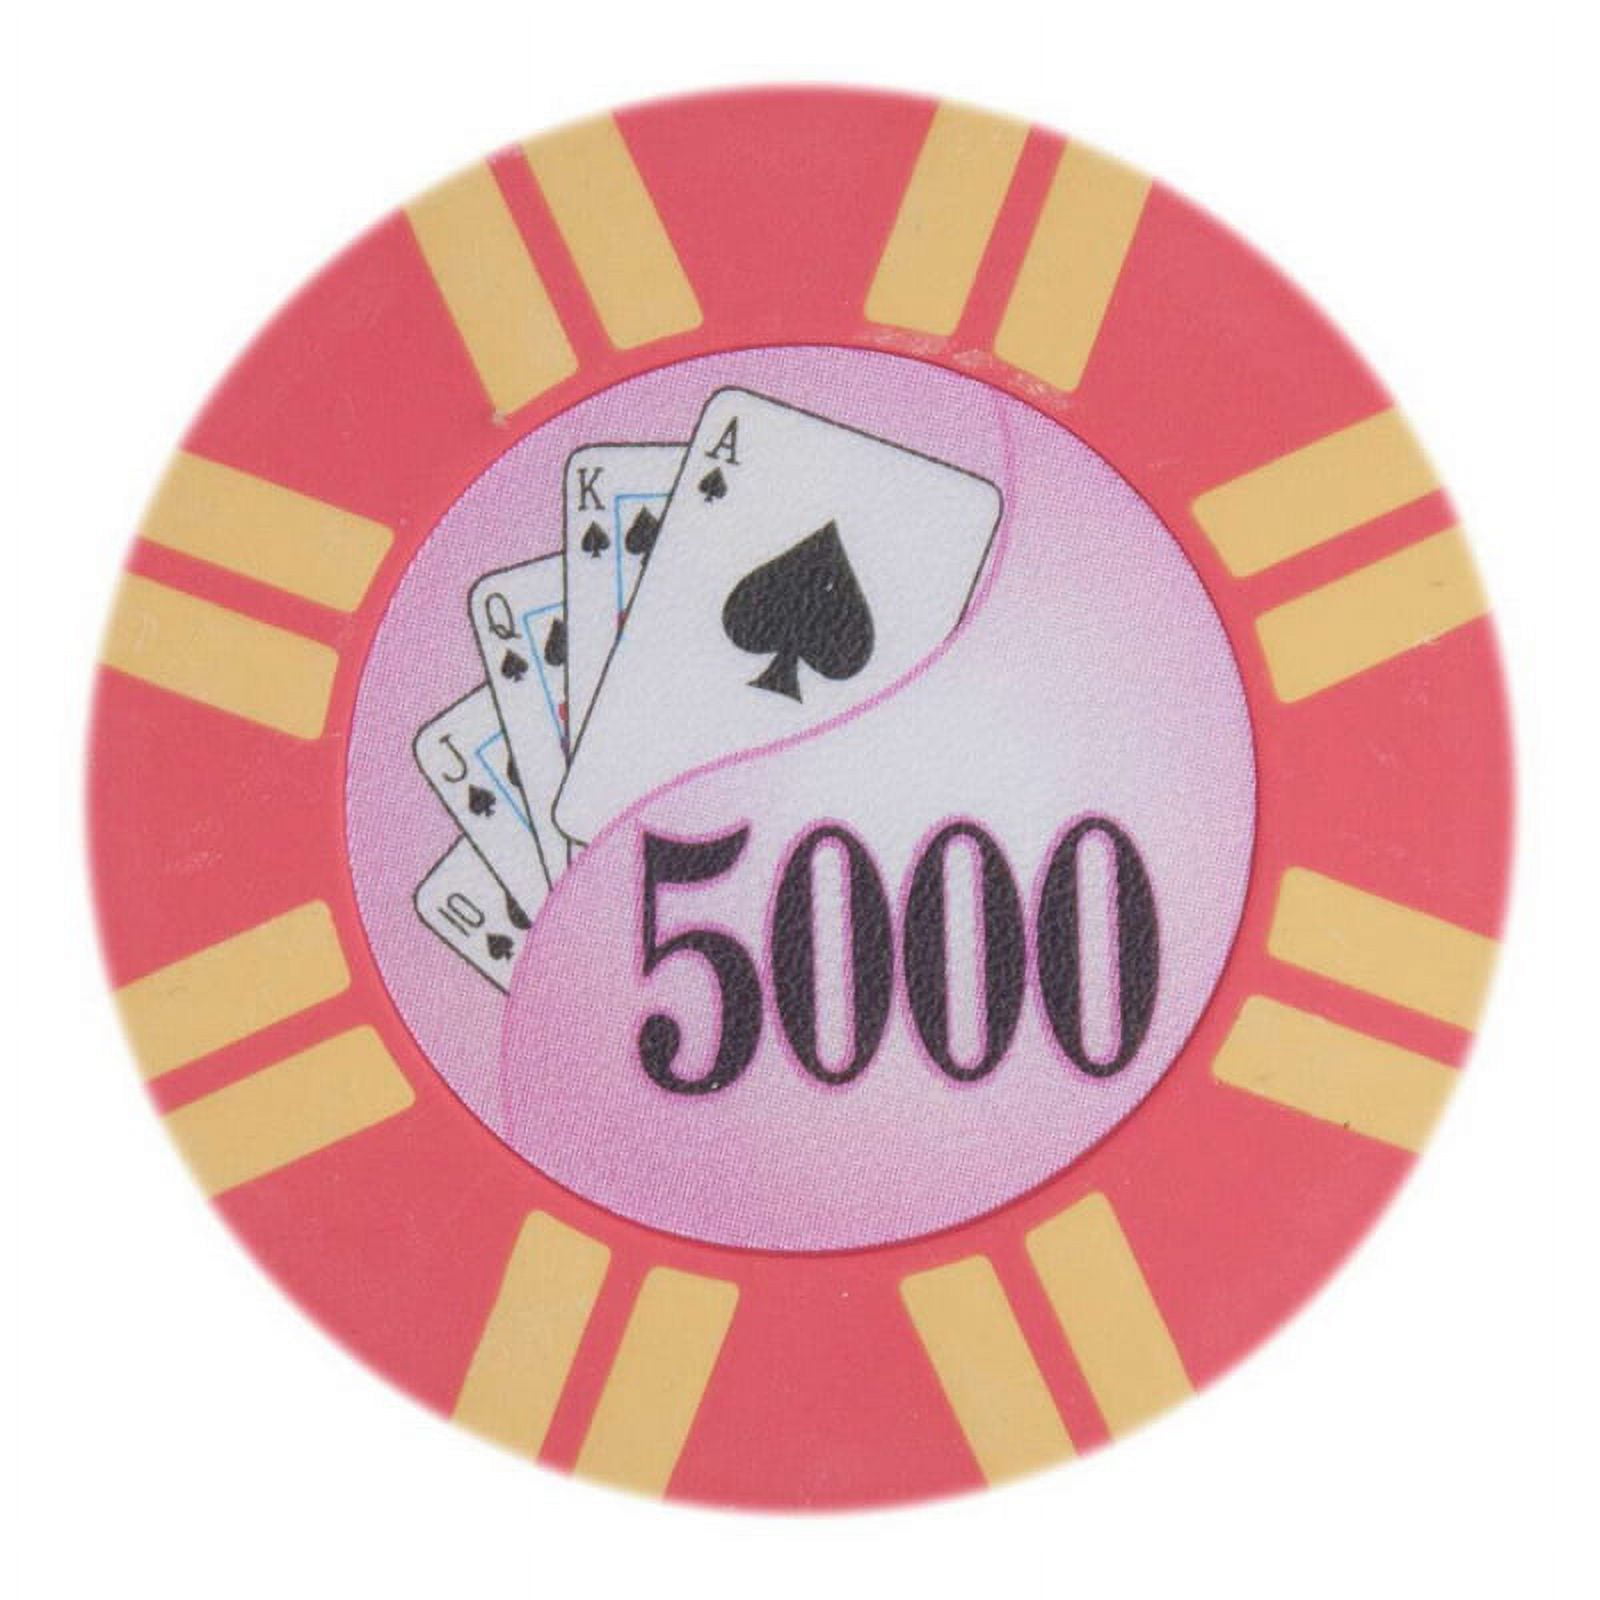 Cptst-5000-25 8 G 2 Stripe Twist Poker Chips - 5000, Pack Of 25